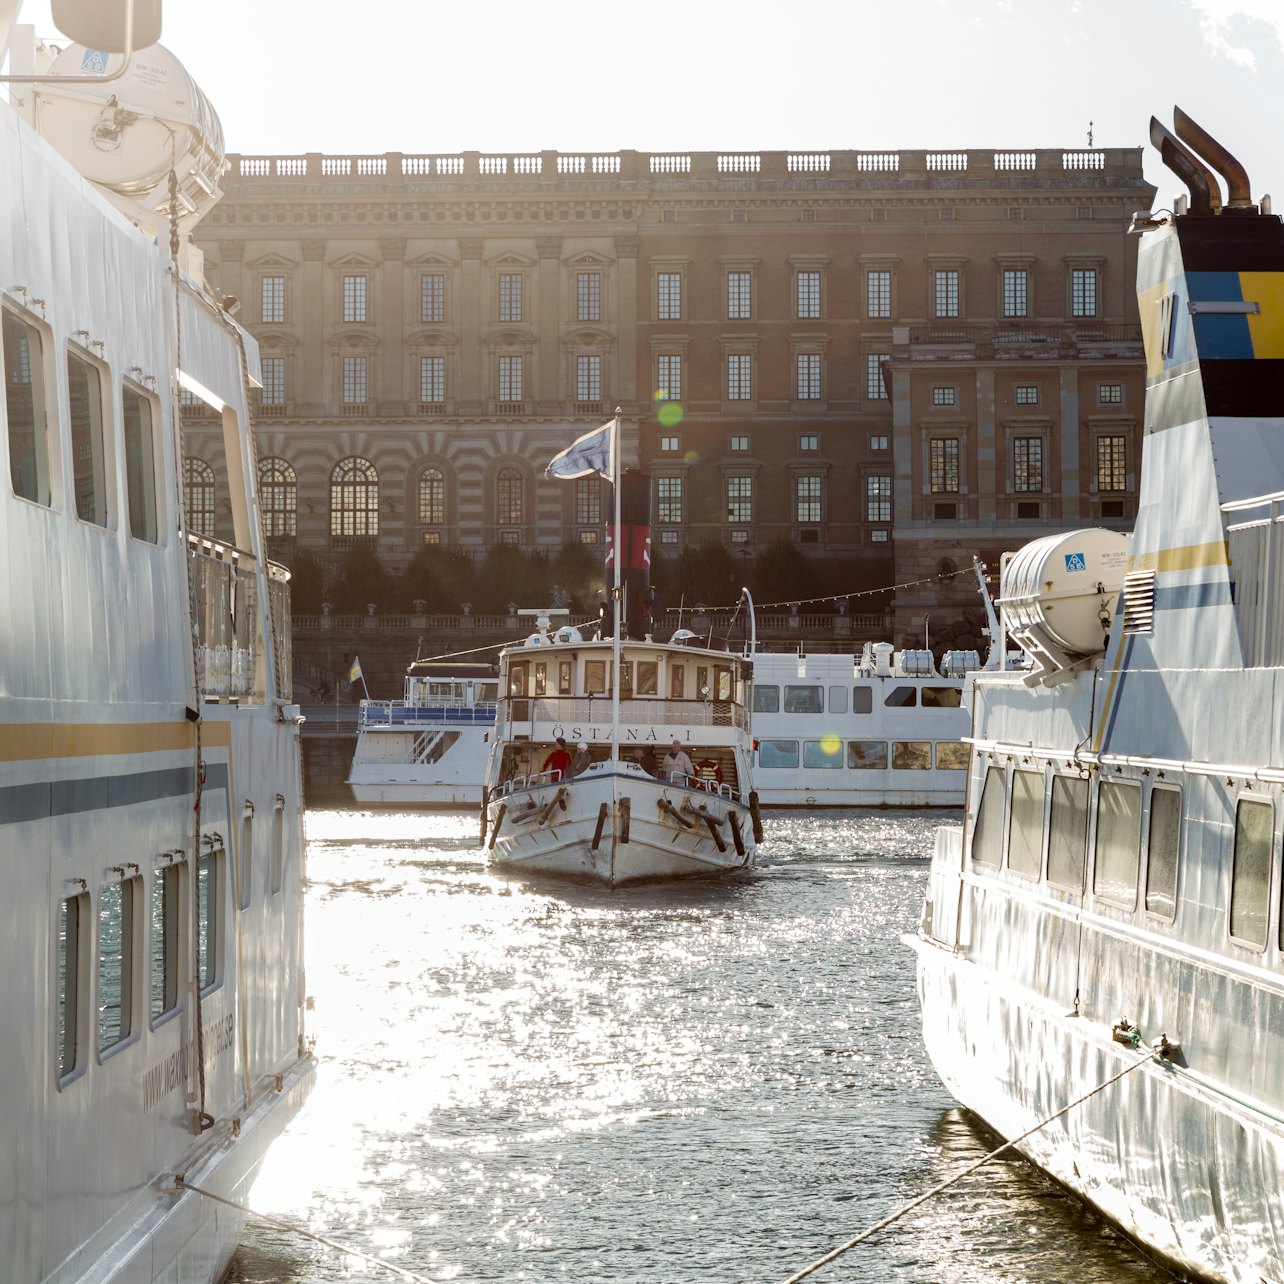 Hop-on Hop-off Boat Stockholm - Accommodations in Stockholm